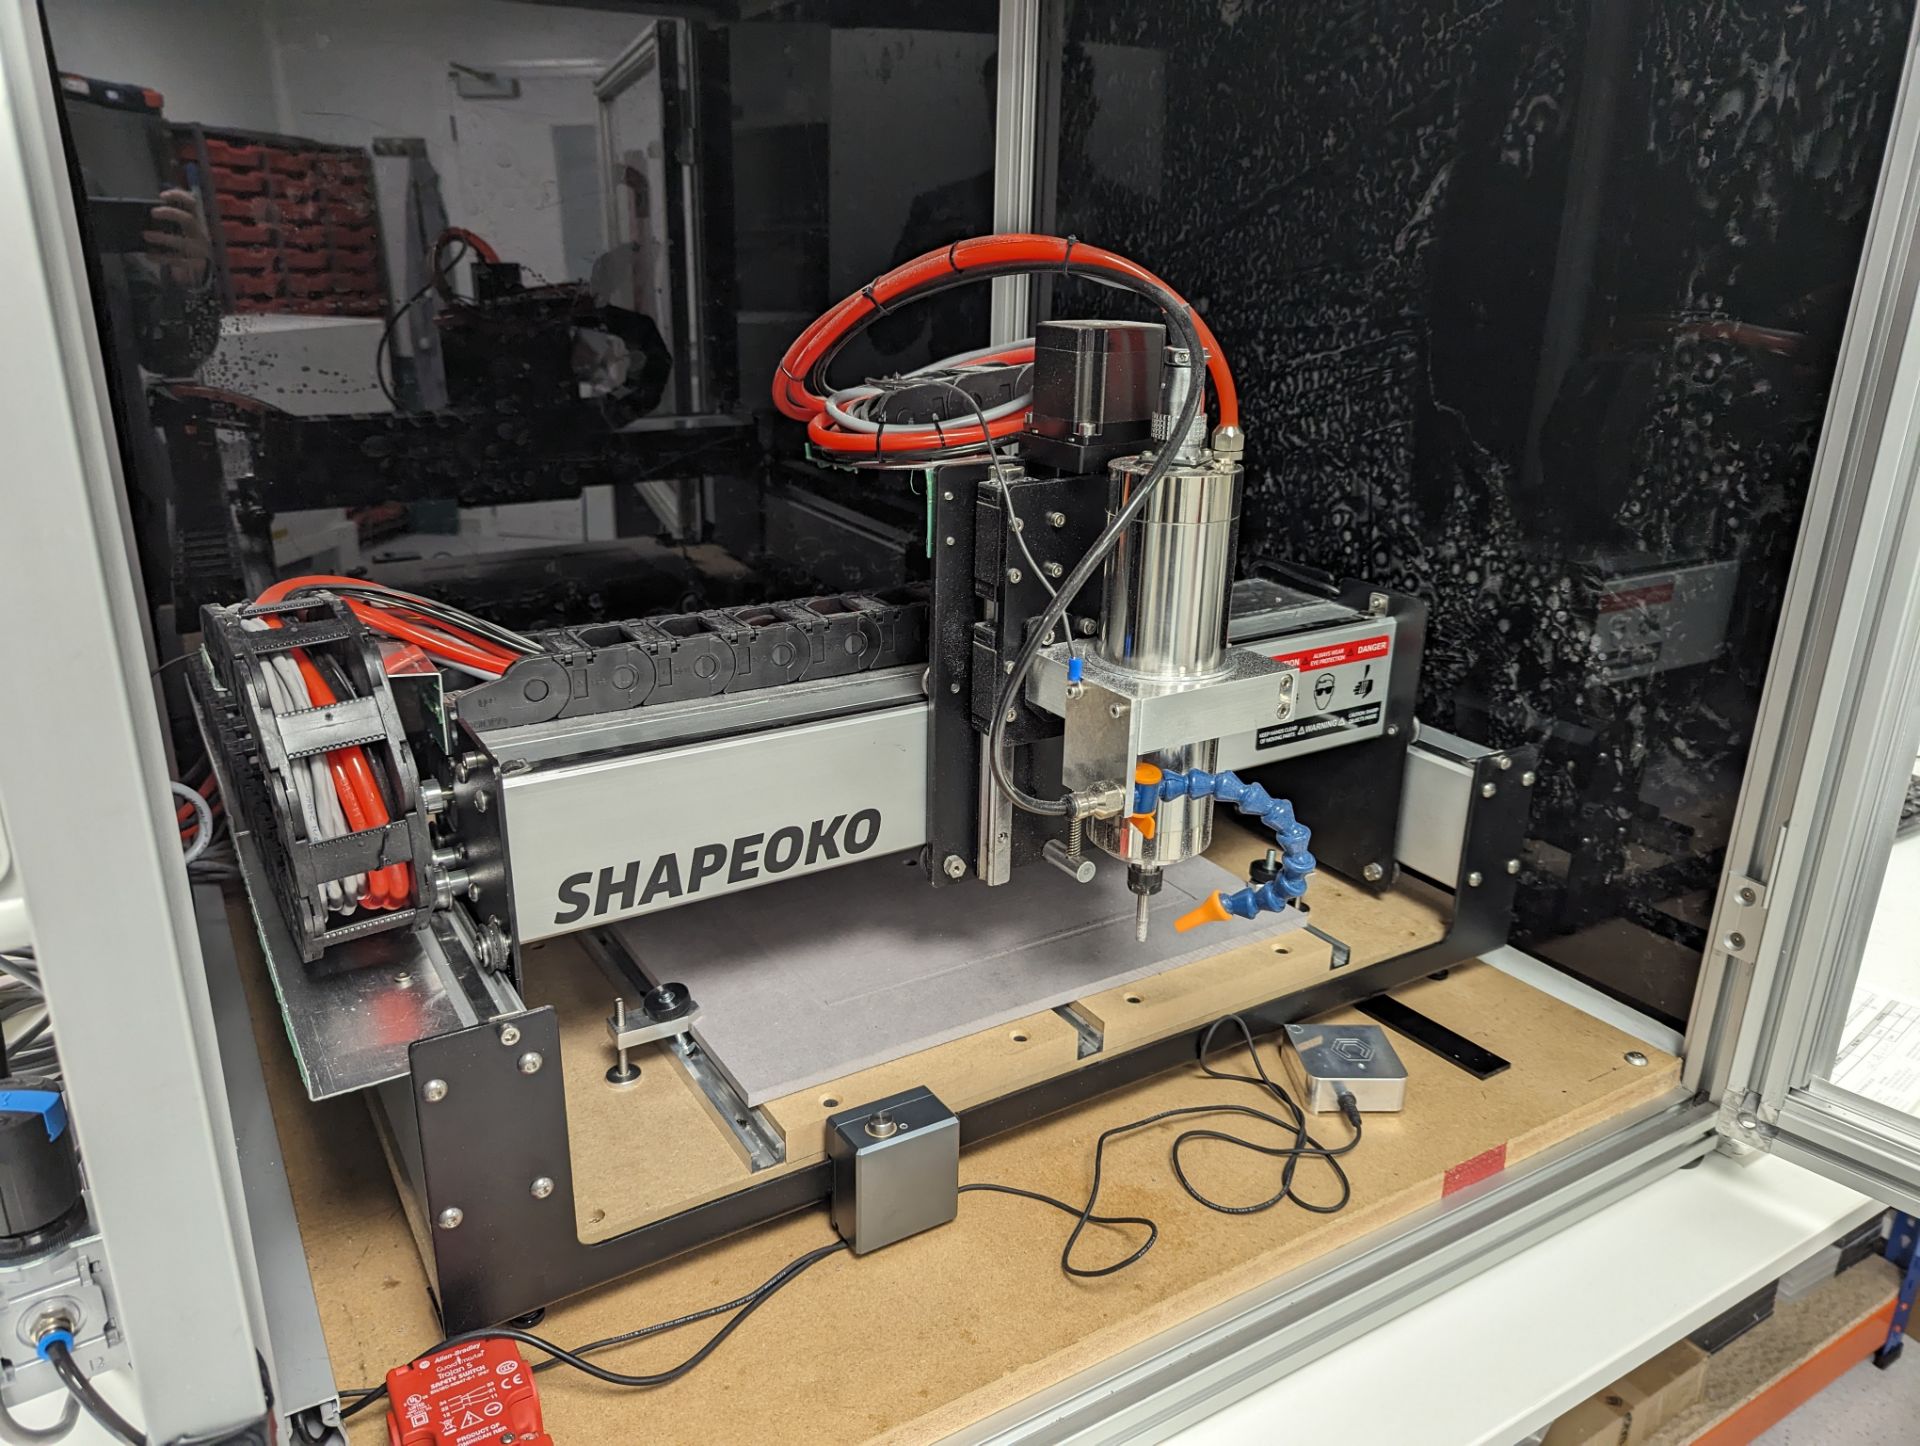 Shapeoko Bench Top 3D Cutting Machine, Serial No. 3400